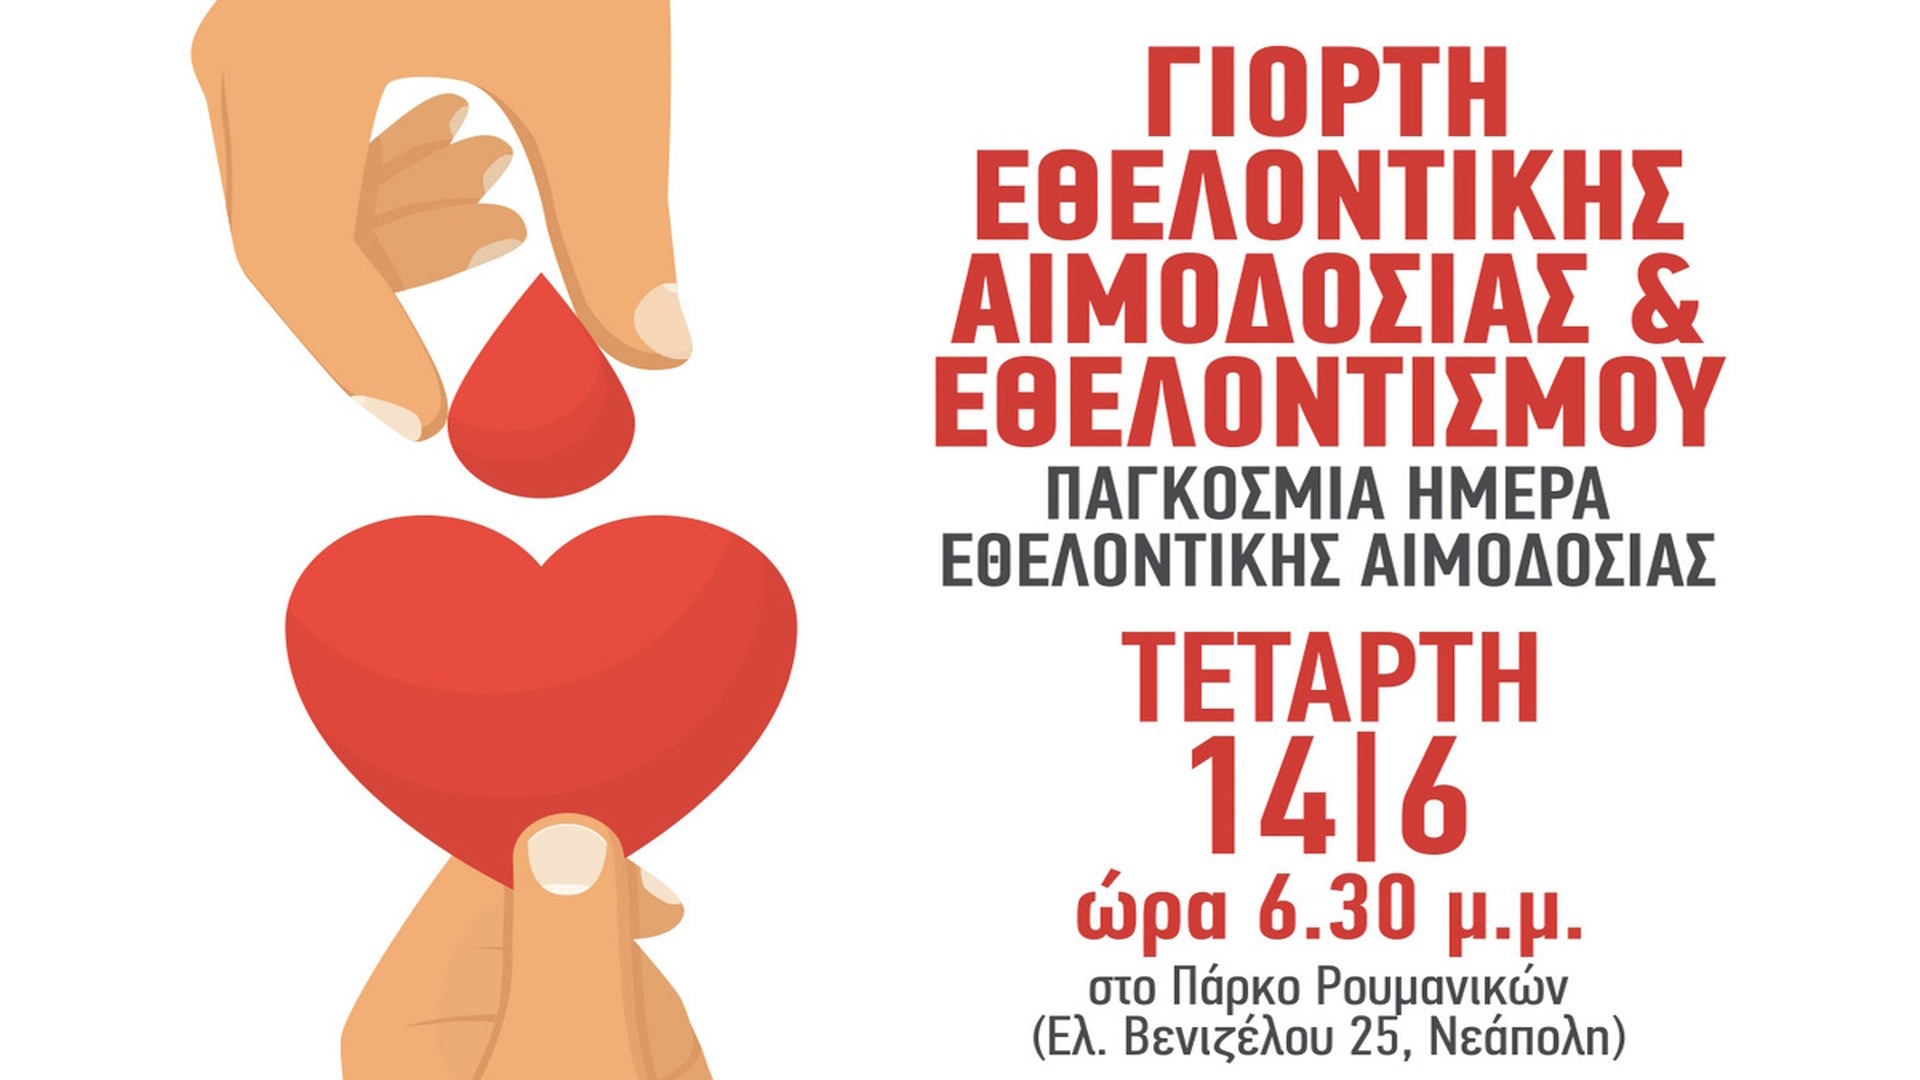 Γιορτή εθελοντικής αιμοδοσίας και εθελοντισμού στο δήμο Νεάπολης-Συκεών: Την Τετάρτη 14 Ιουνίου όποιος προσφέρει, το γιορτάζει